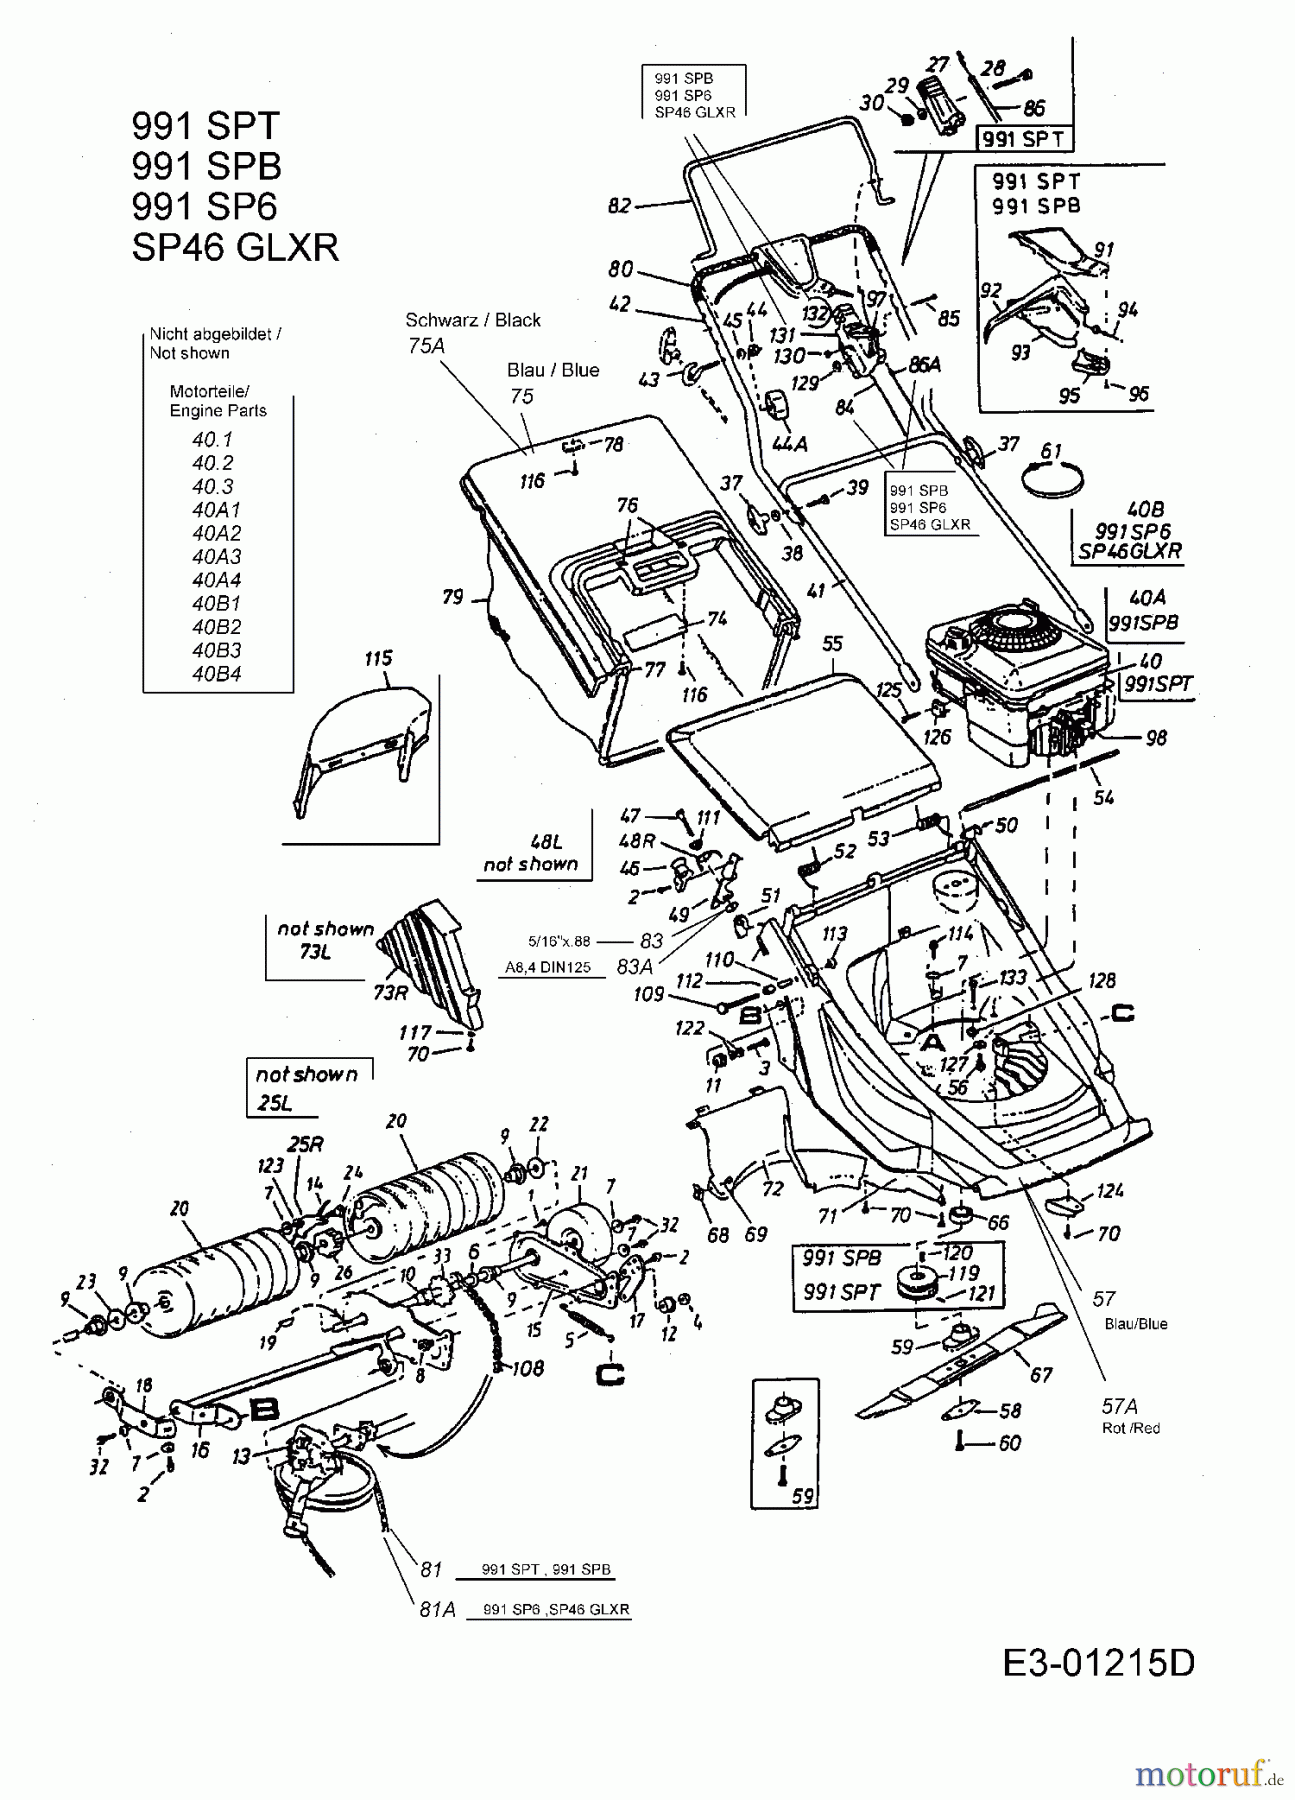  Lawnflite Motormäher mit Antrieb 991 SP 6 12B-658C611  (2001) Grundgerät